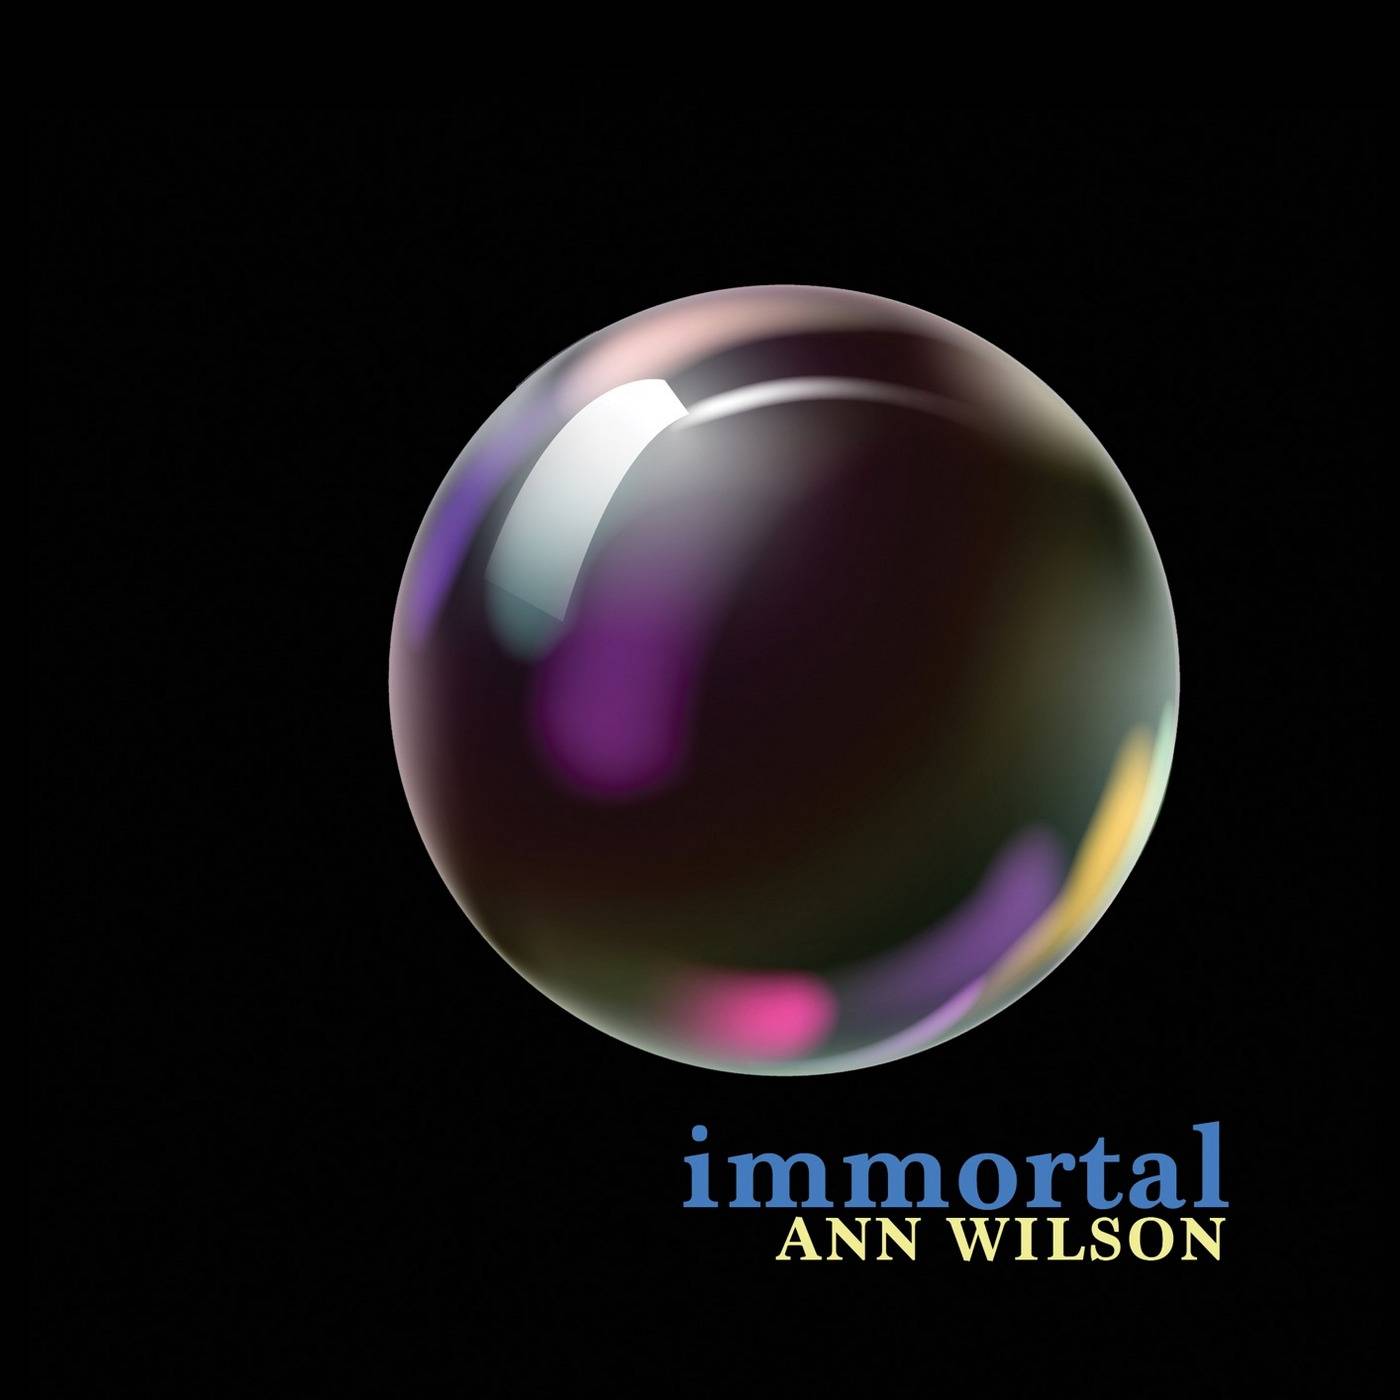 Ann Wilson – Immortal (2018) [FLAC 24bit/96kHz]